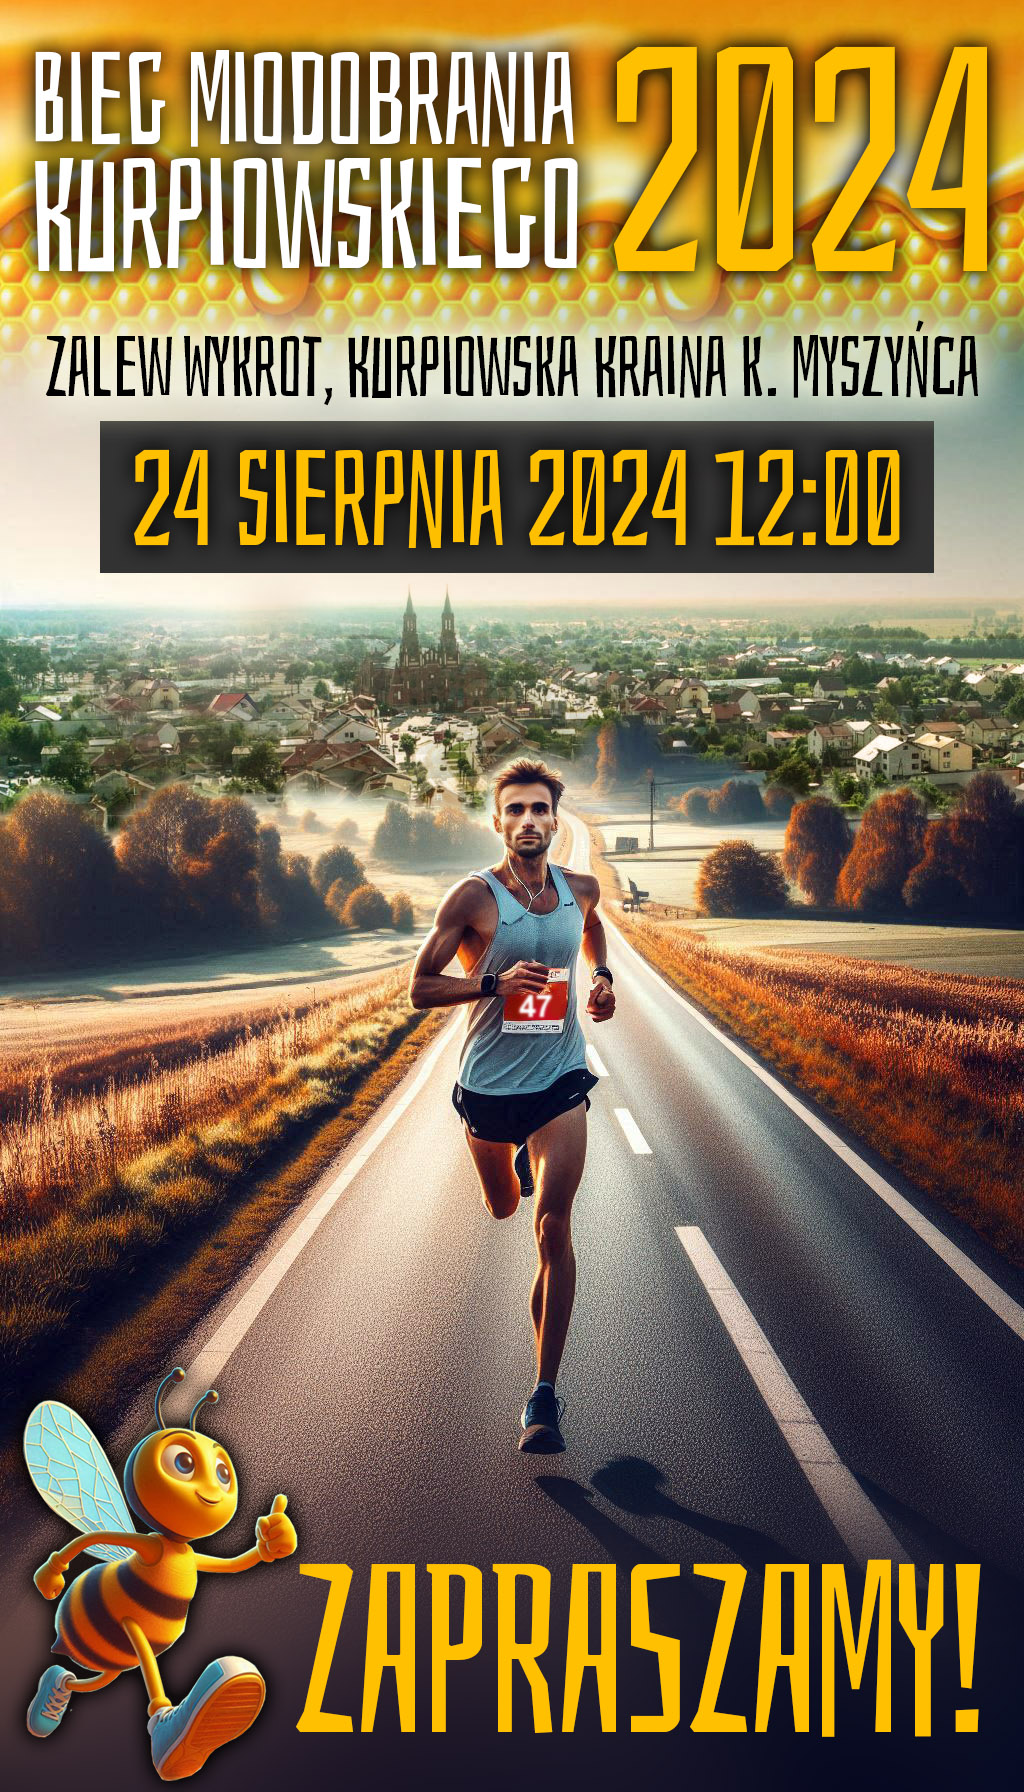 Plakat z biegaczem